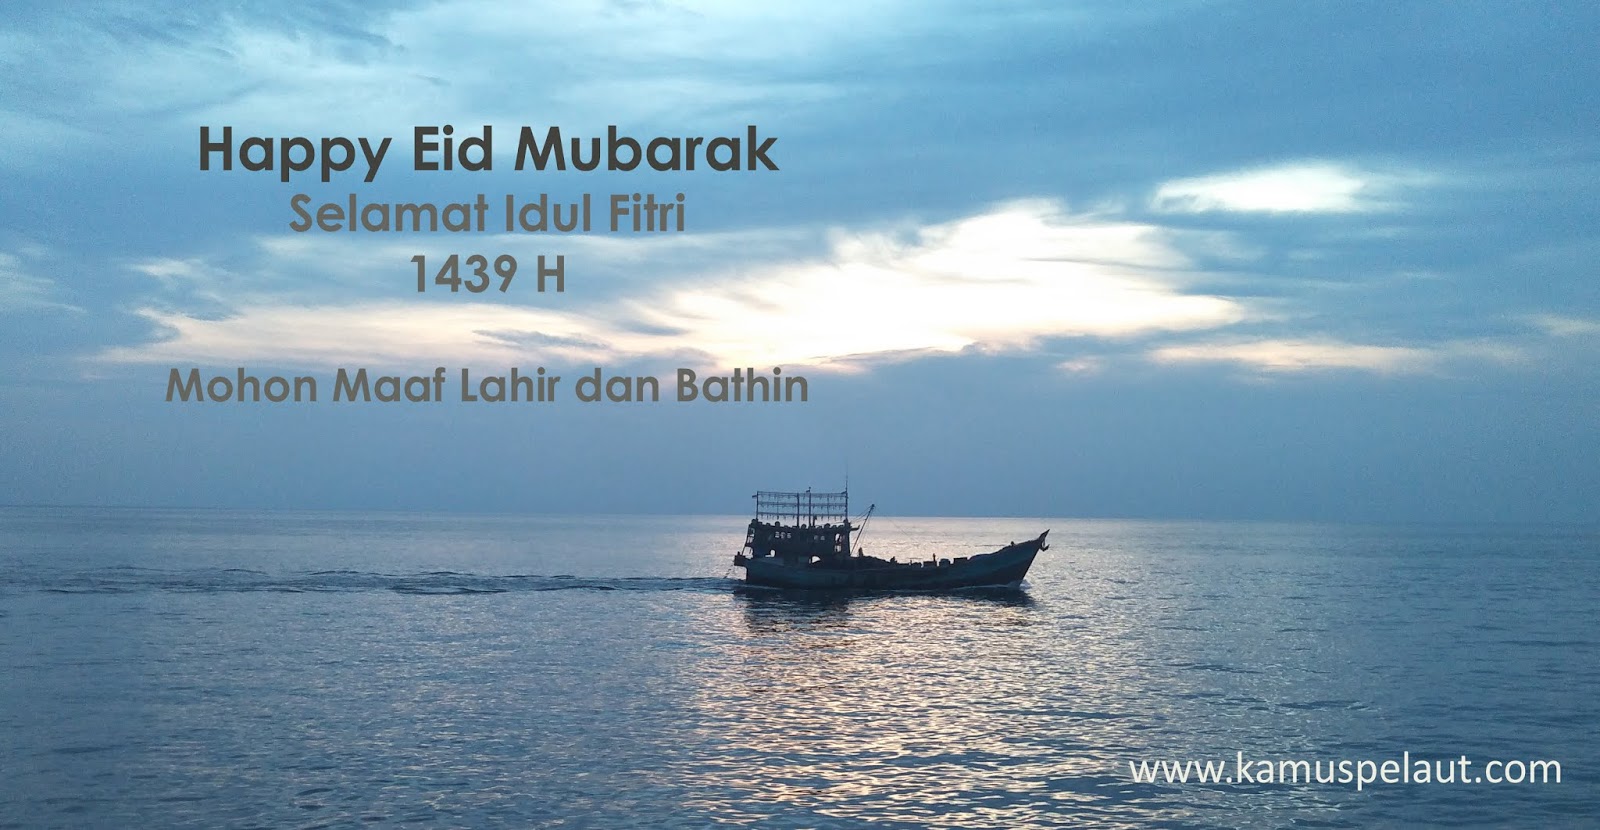 Kamus Pelaut Happy Eid Mubarak